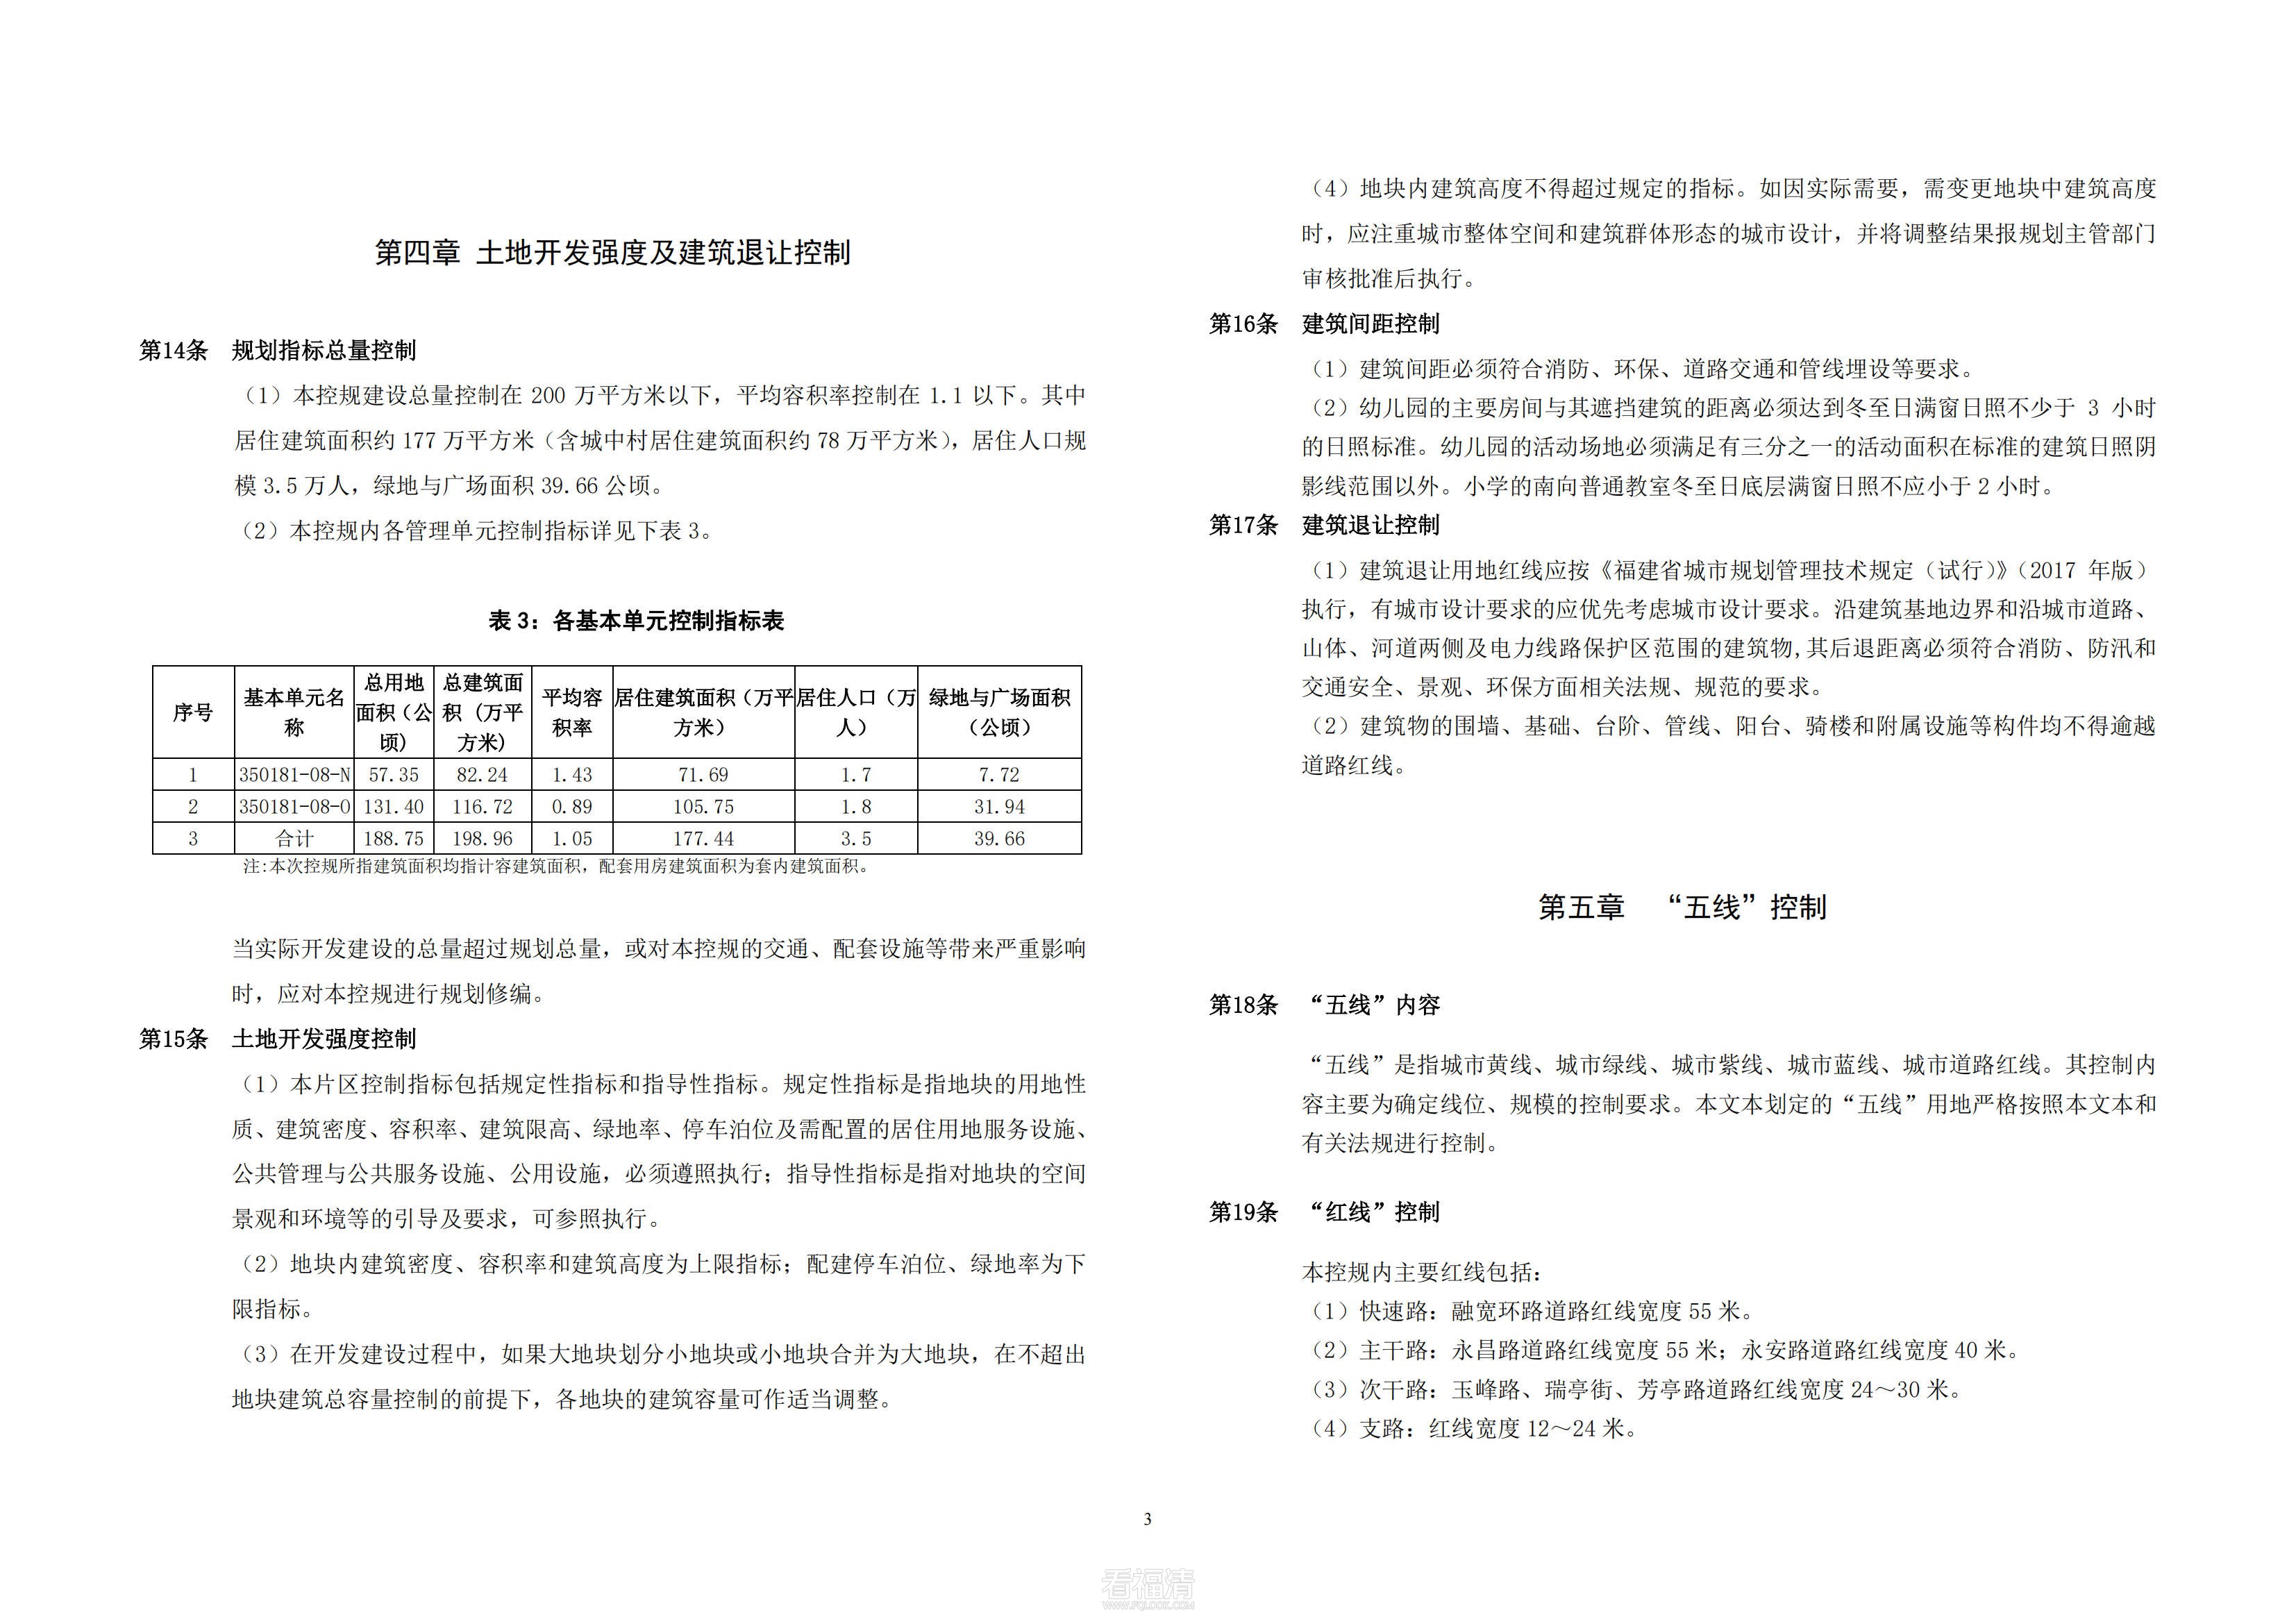 福清市中心城区基本单元350181-08-N、350181-08-O控制性详细规划修编_07.jpg